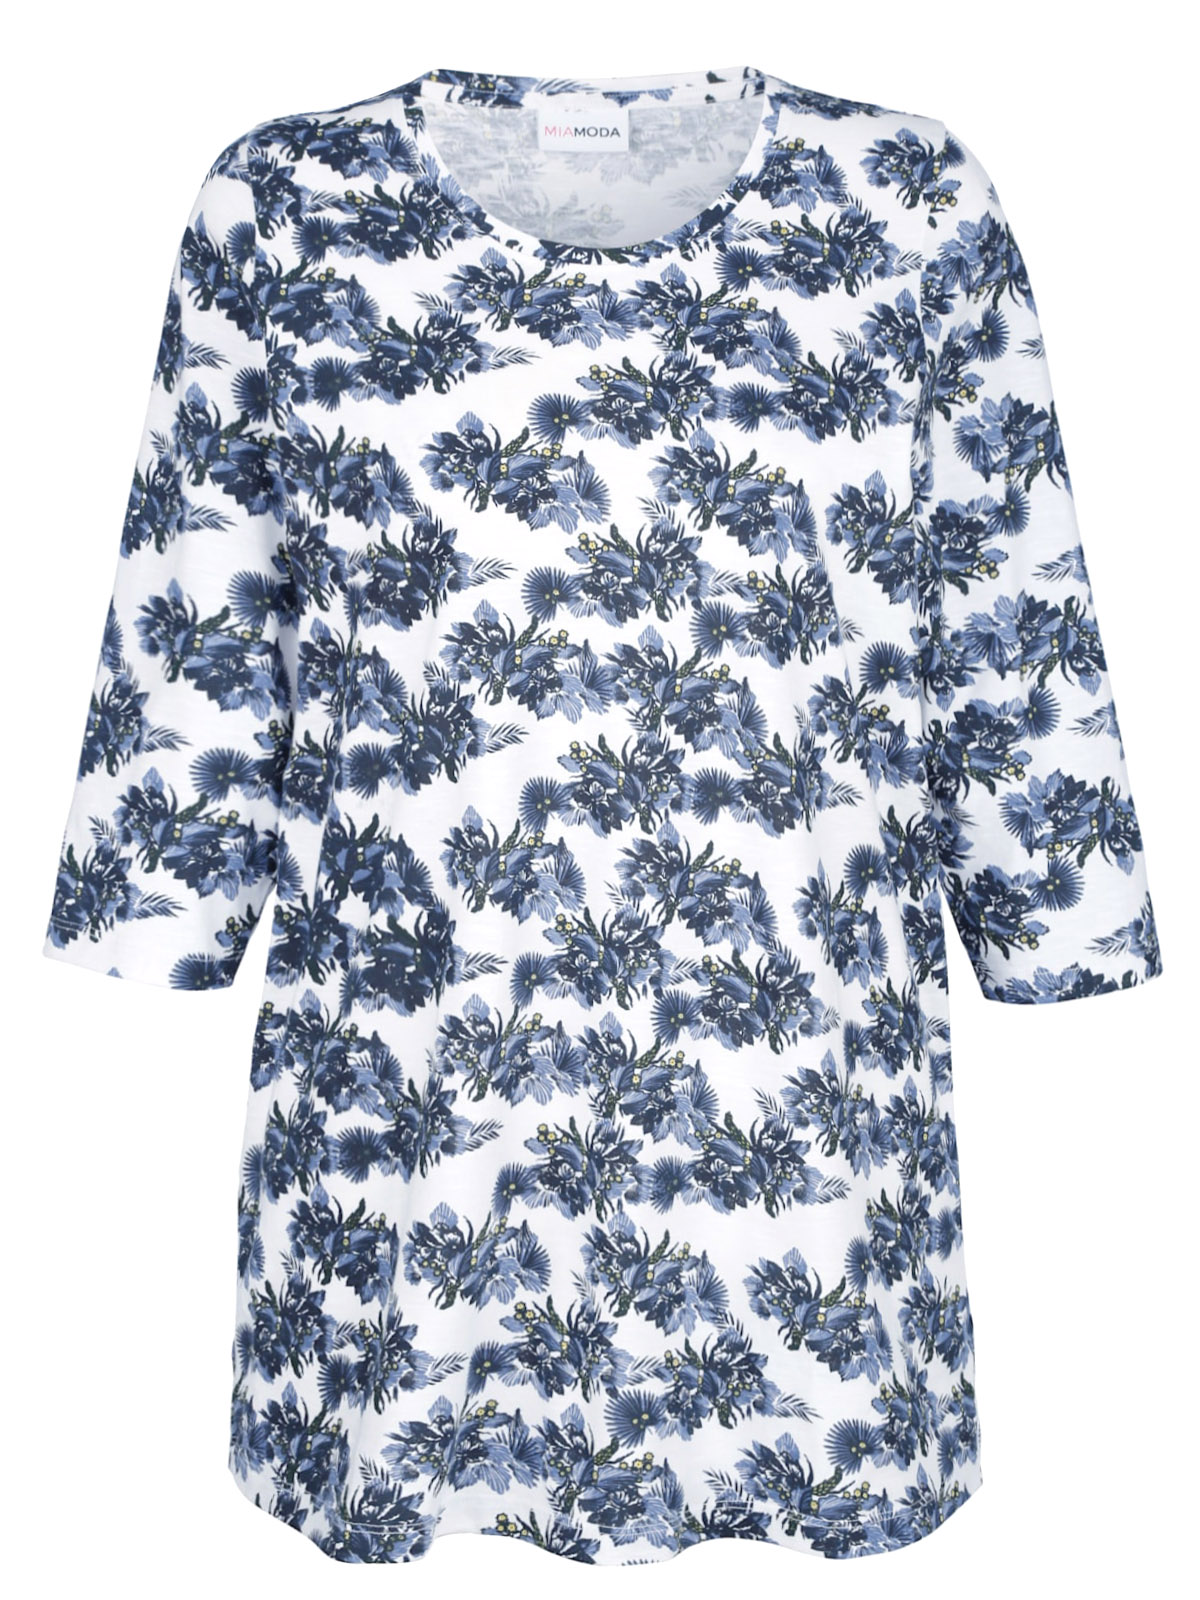 Wholesale Knitwear by Mia Moda - - Mia Moda BLUE Pure Cotton Floral ...